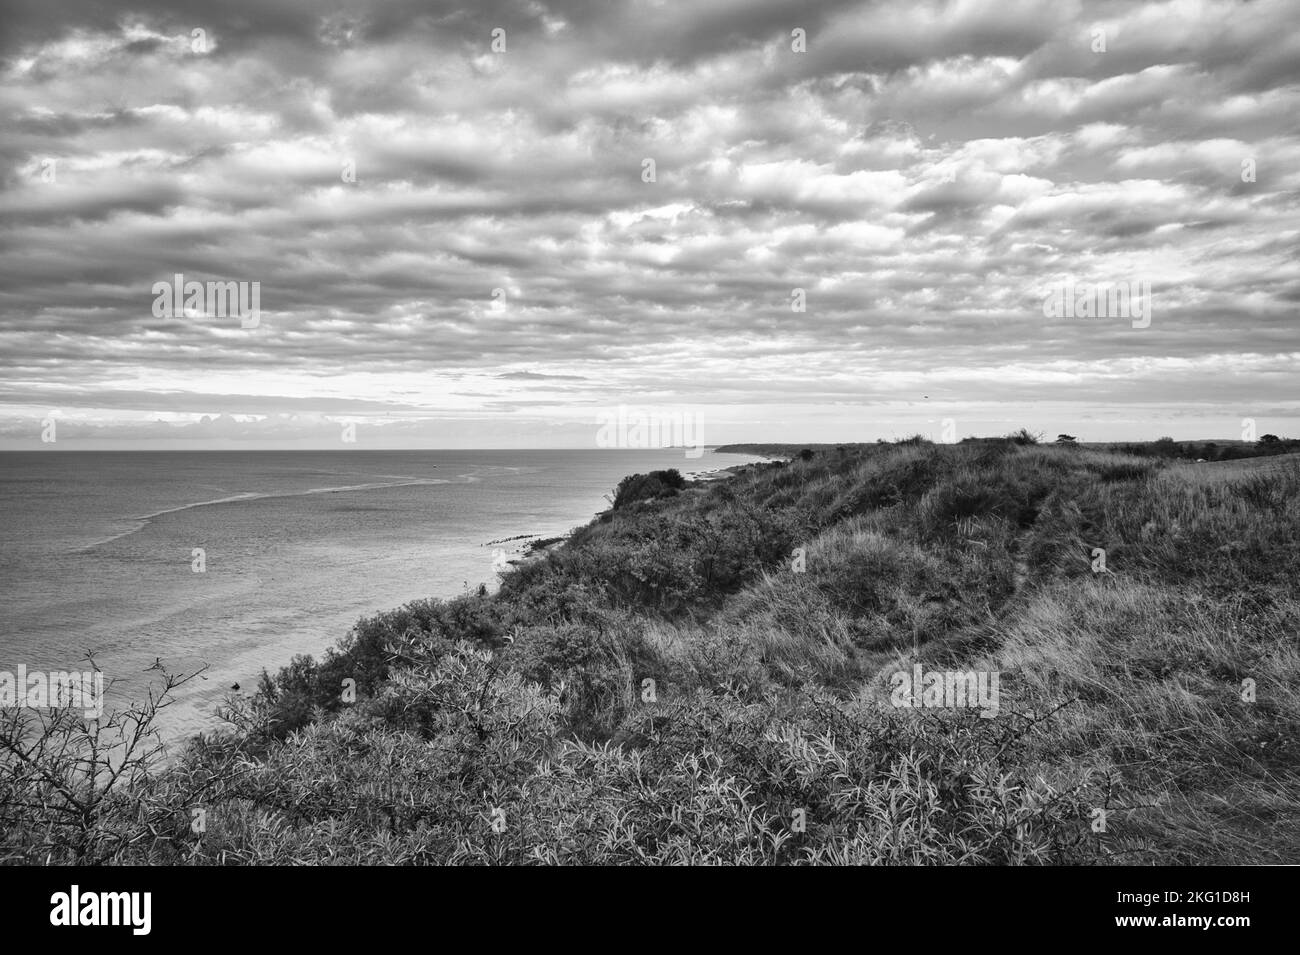 Hundested, Dinamarca en el acantilado con vistas al mar en blanco y negro. Costa del mar Báltico, pradera con césped, playa. Nubes en el horizonte. Horizontal pho Foto de stock